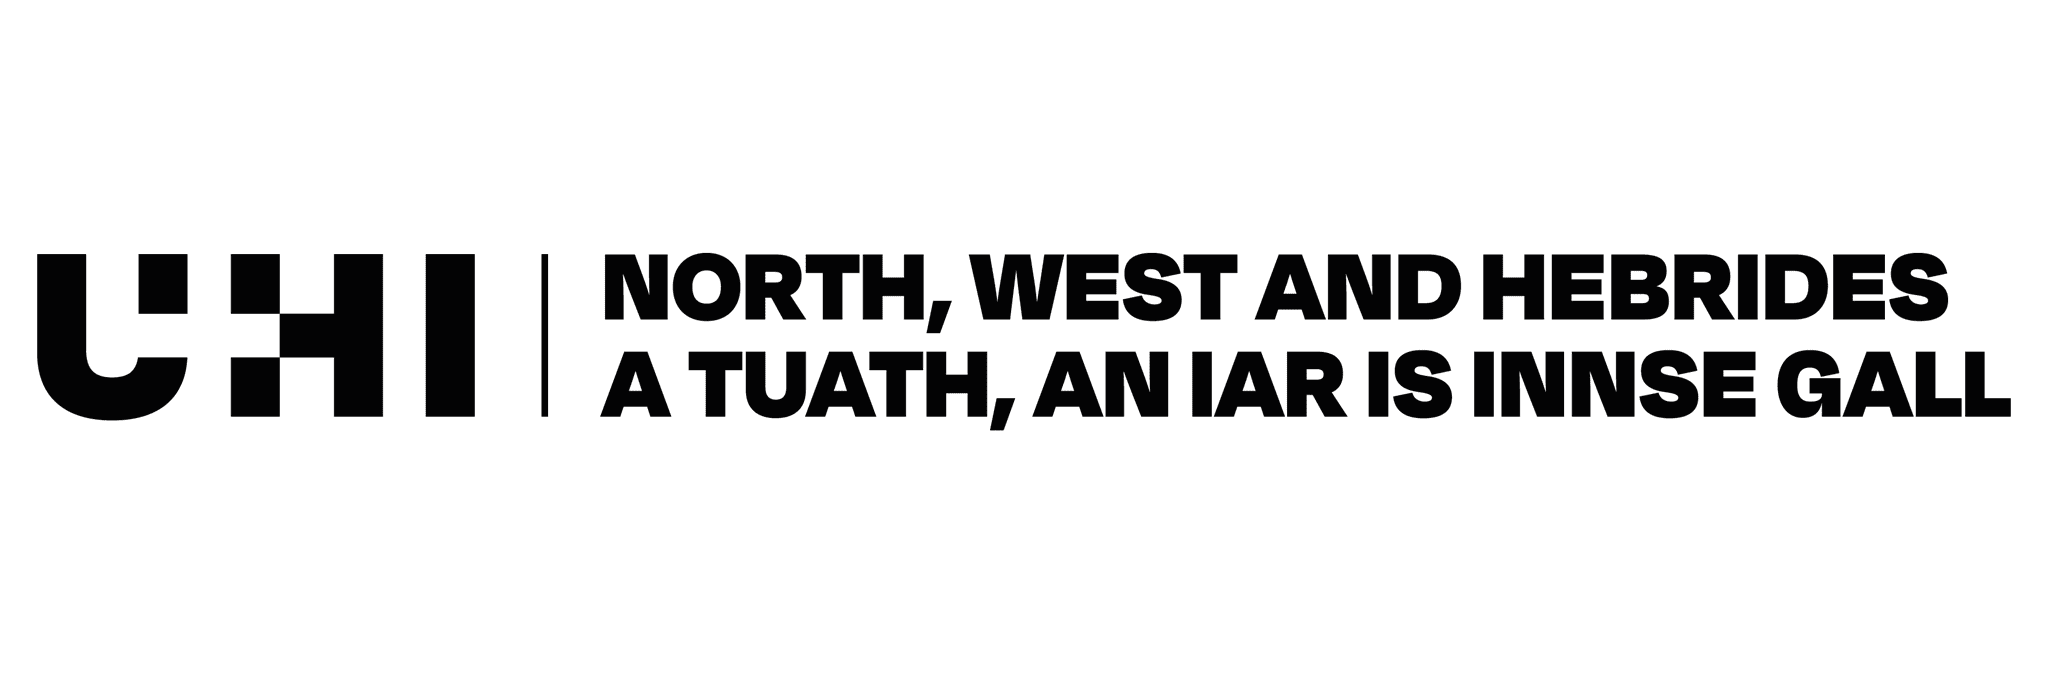 uhi-north-west-and-hebrides-black